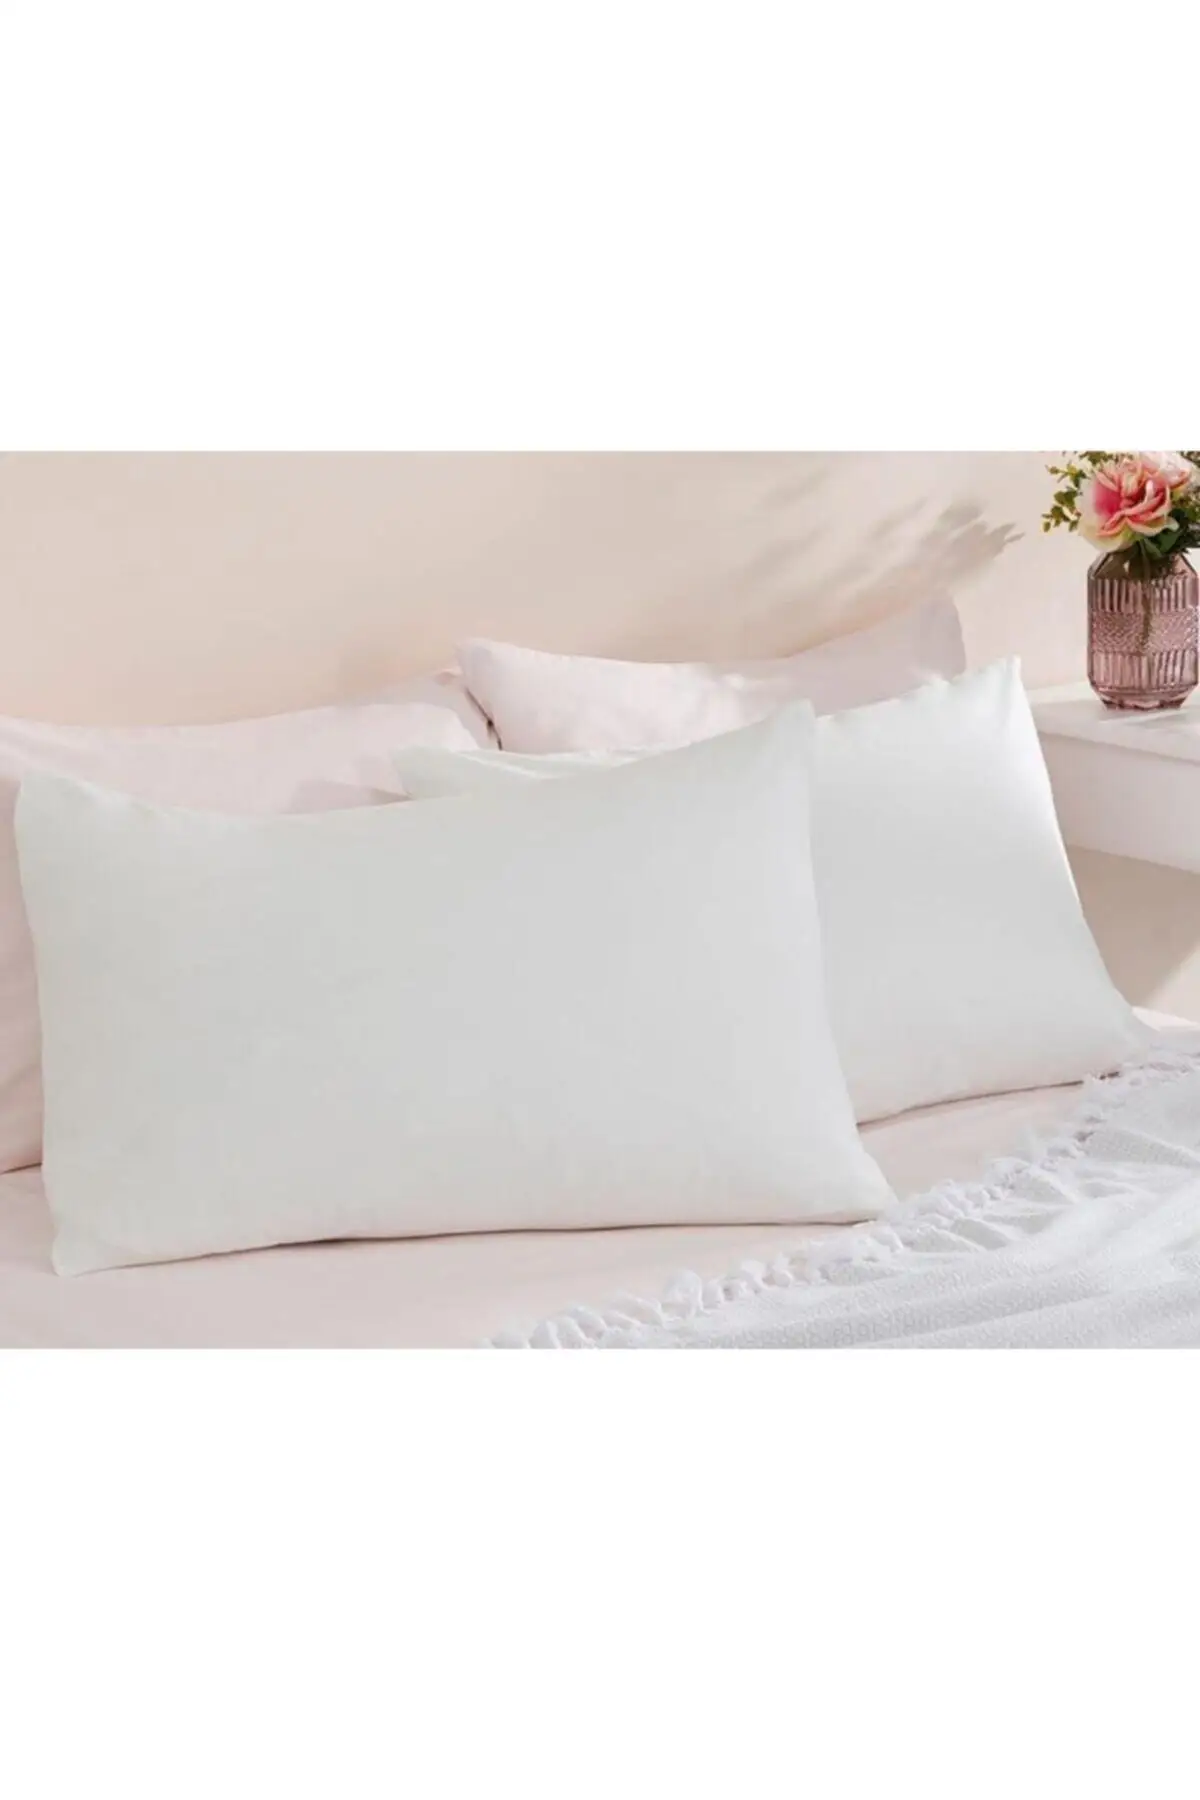 

Чехол для подушки, белые платья на молнии, 2 из 50x70 см, подушка из хлопка и полиэстера, текстиль для спальни, мебель для дома